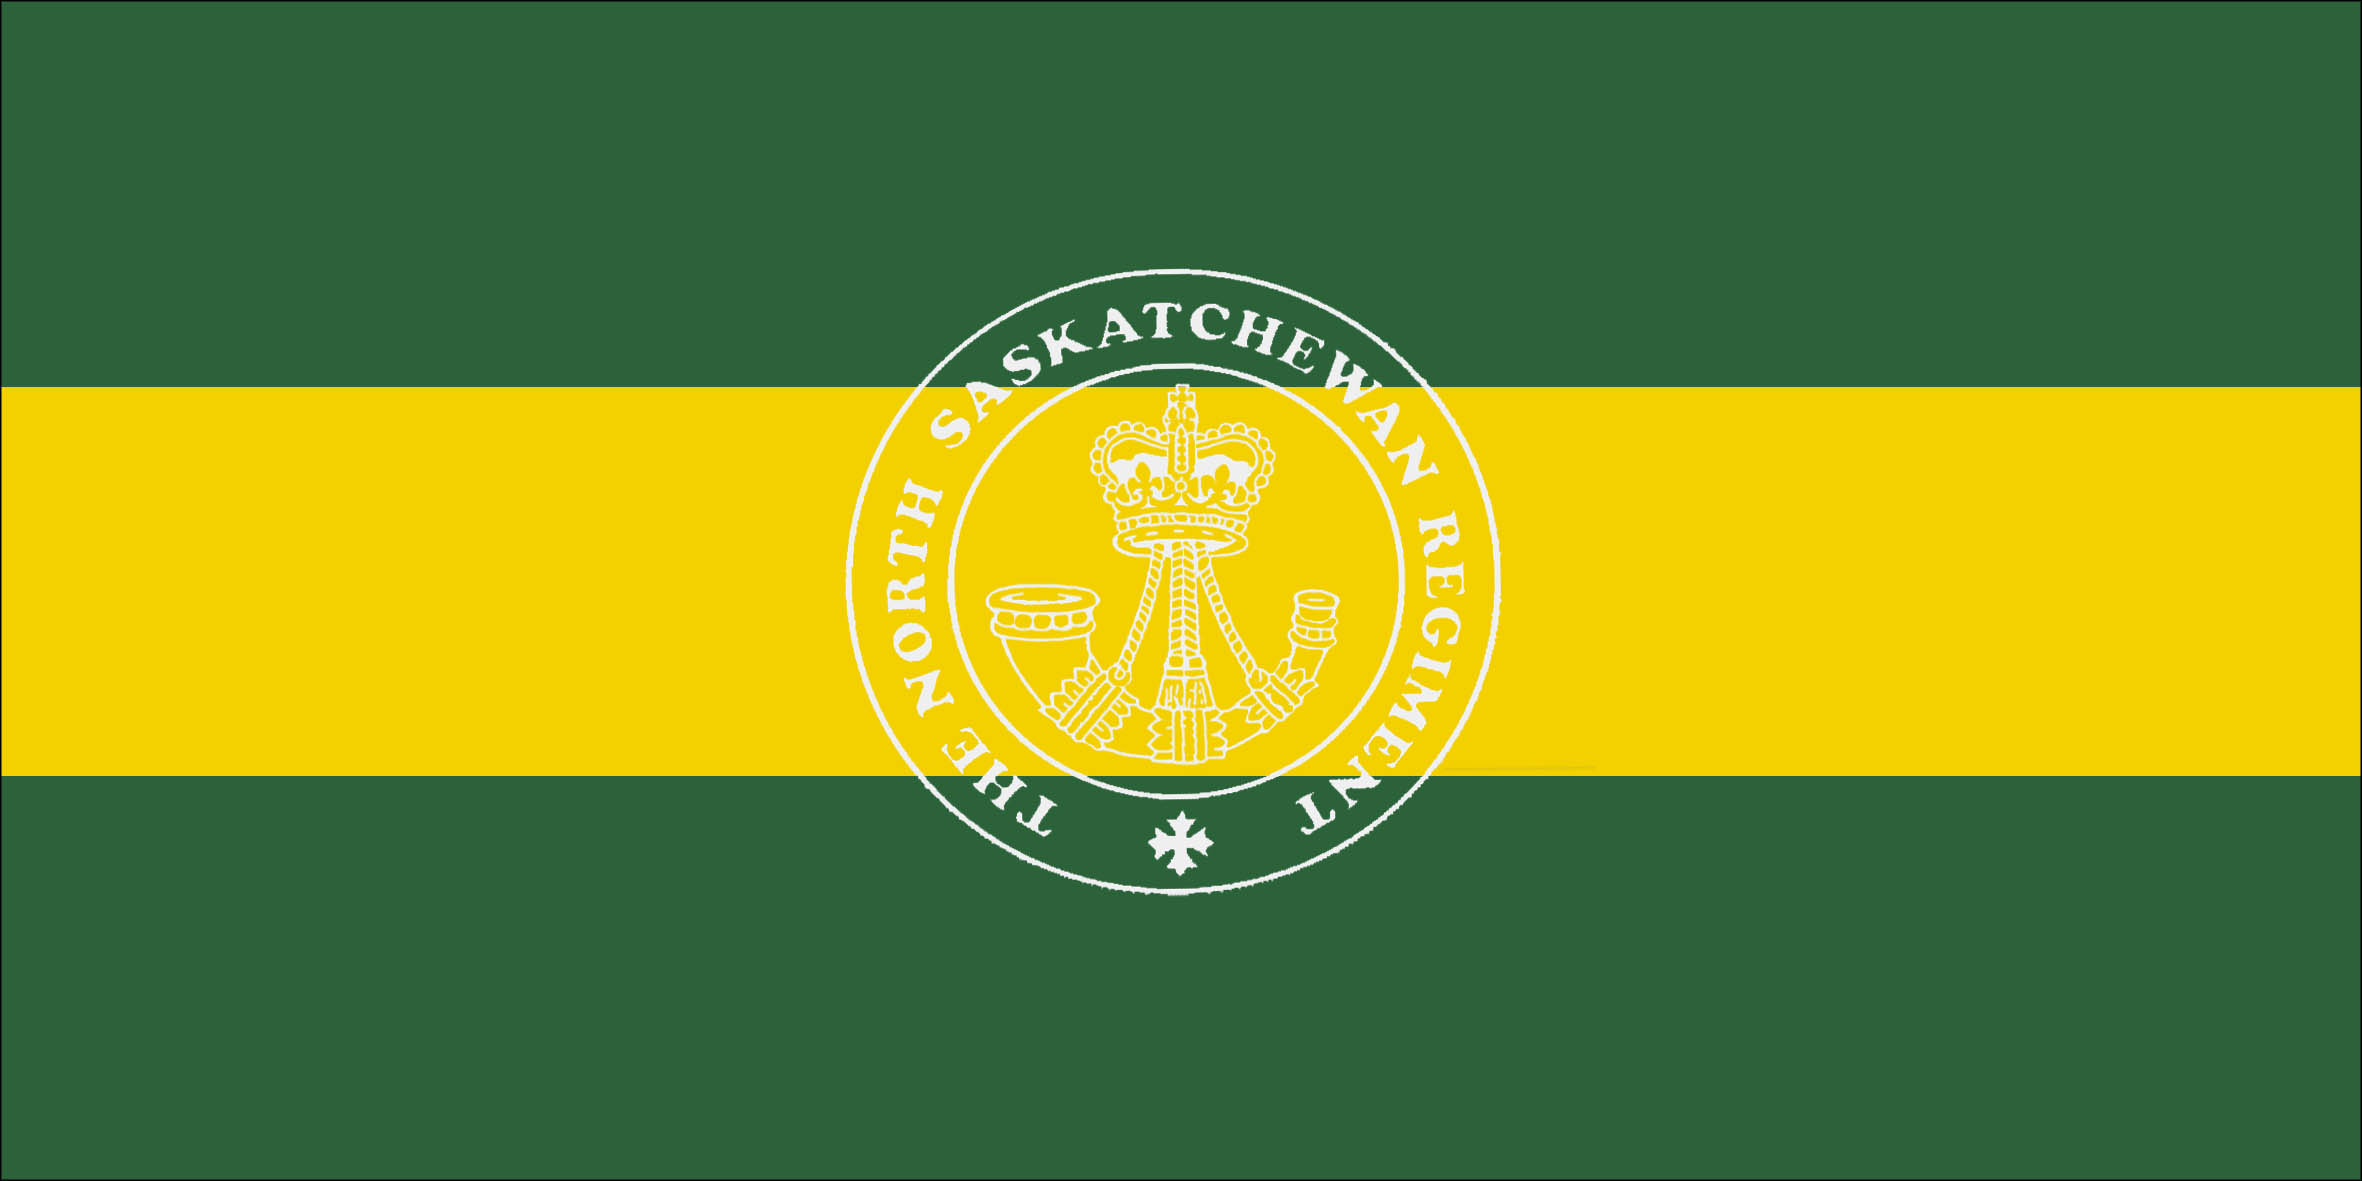 The North Saskatchewan Regiment